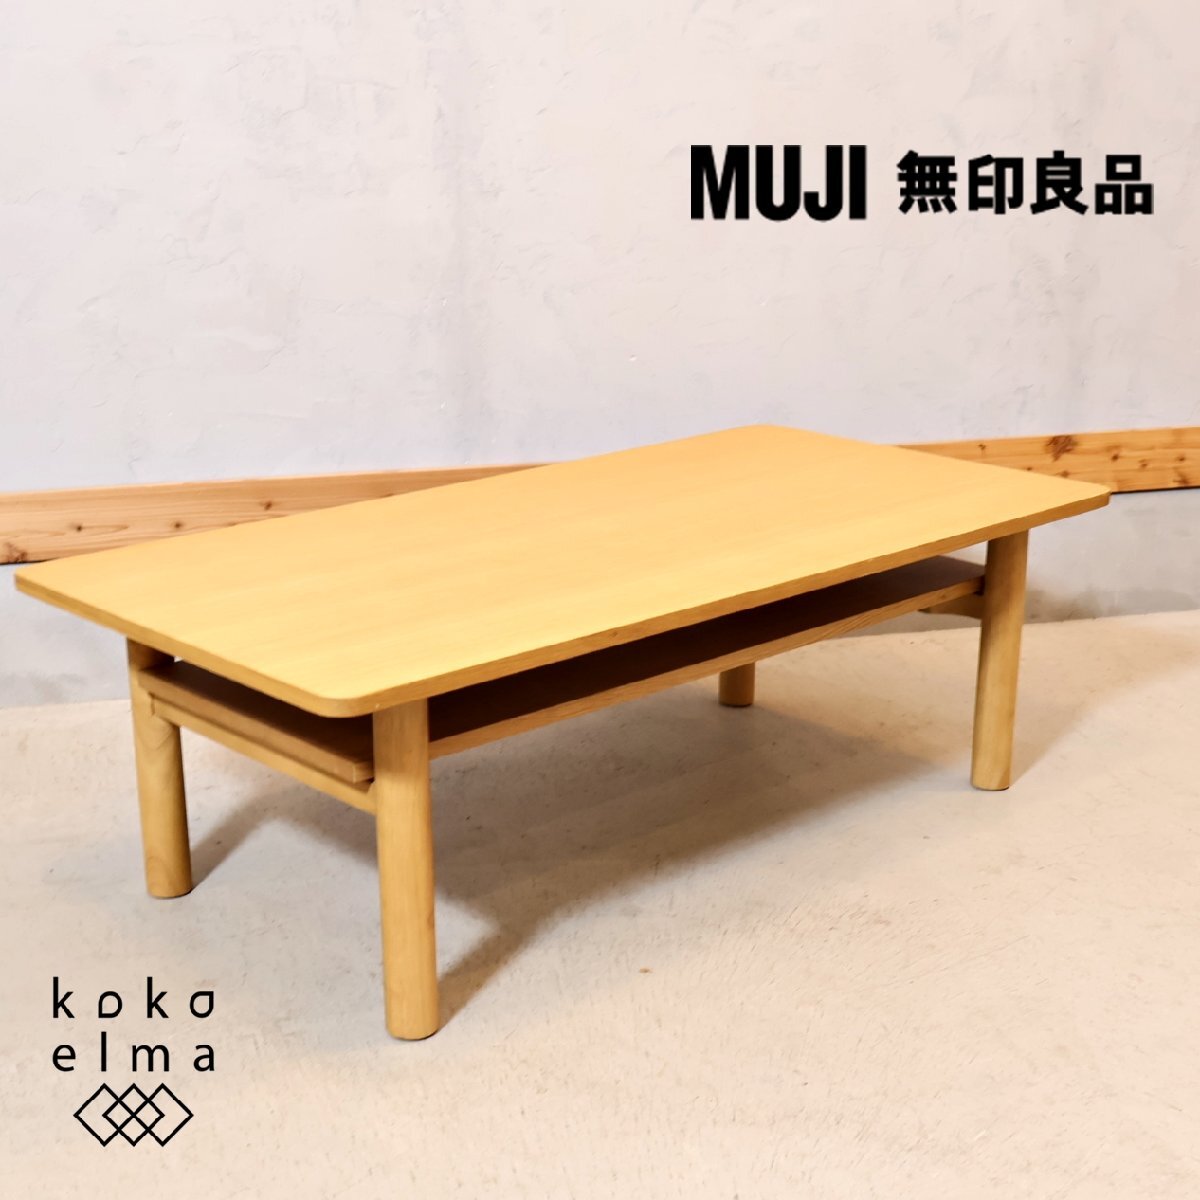 無印良品 MUJI オーク材 木製ローテーブル リビングテーブル センターテーブル 北欧スタイル ナチュラル カフェスタイル シンプル ED322_画像1